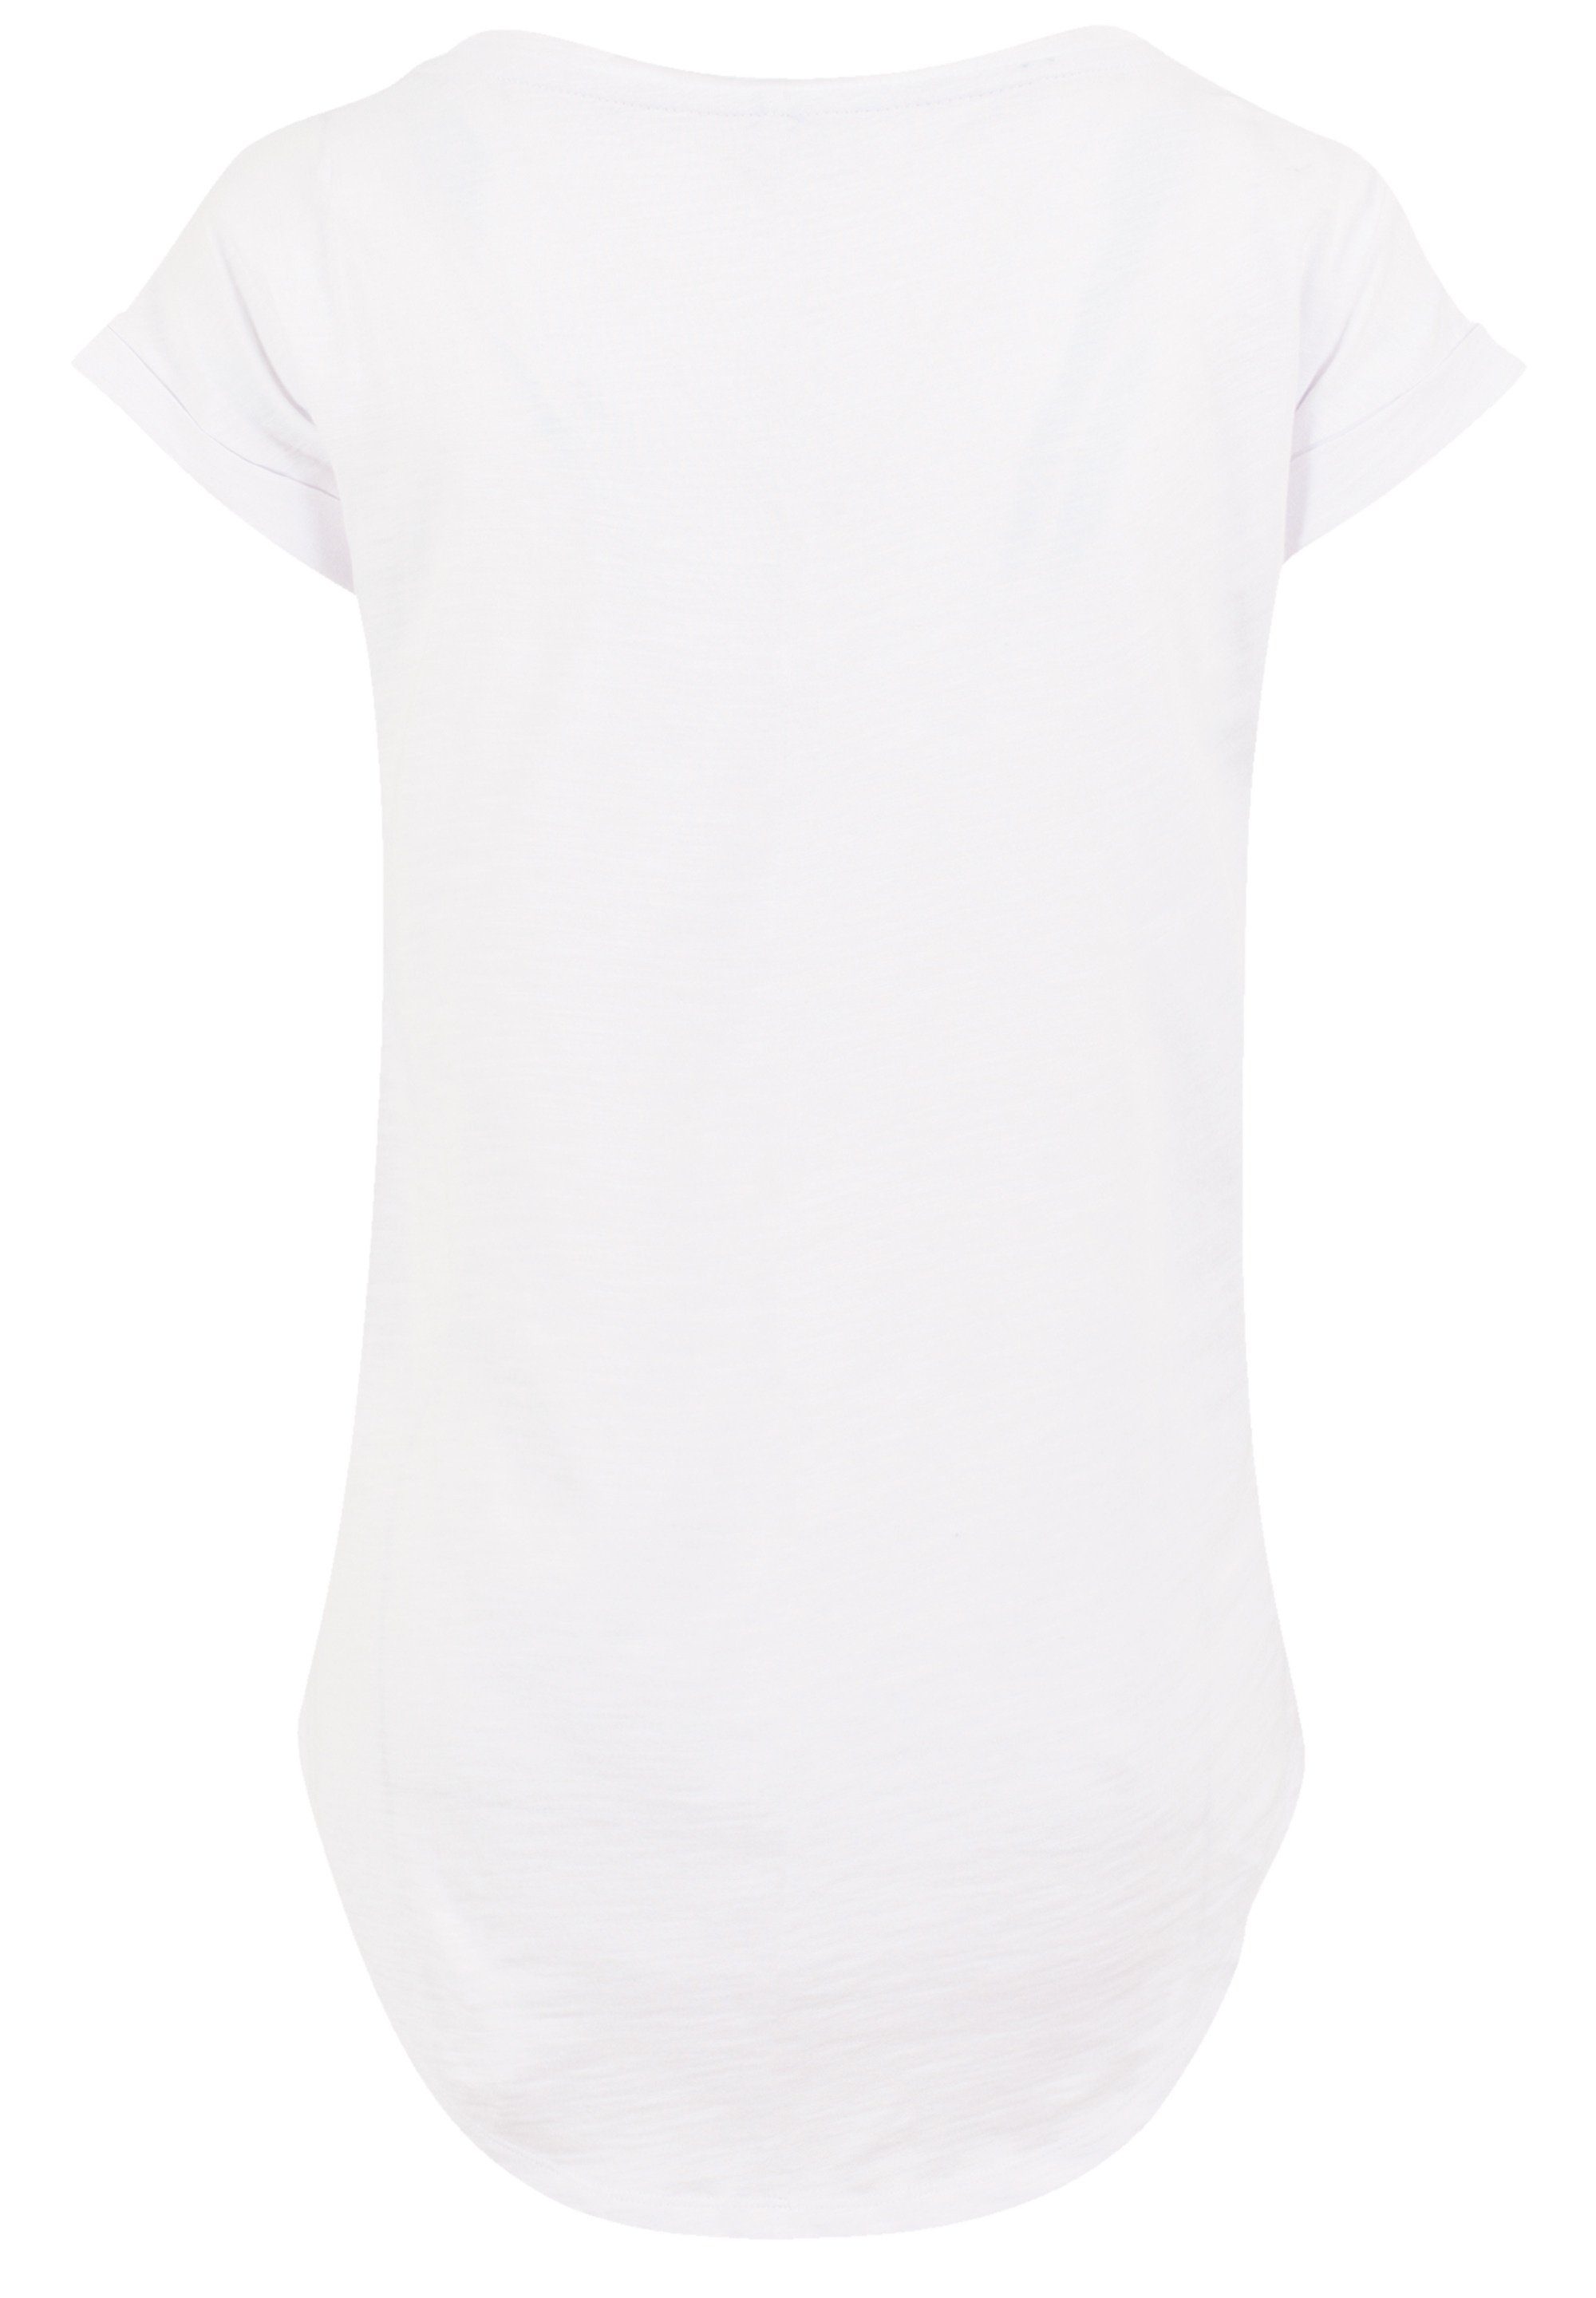 Baumwollstoff mit Tragekomfort T-Shirt Premium Disney weicher hohem König Löwen white Qualität, der F4NT4STIC Sehr Together